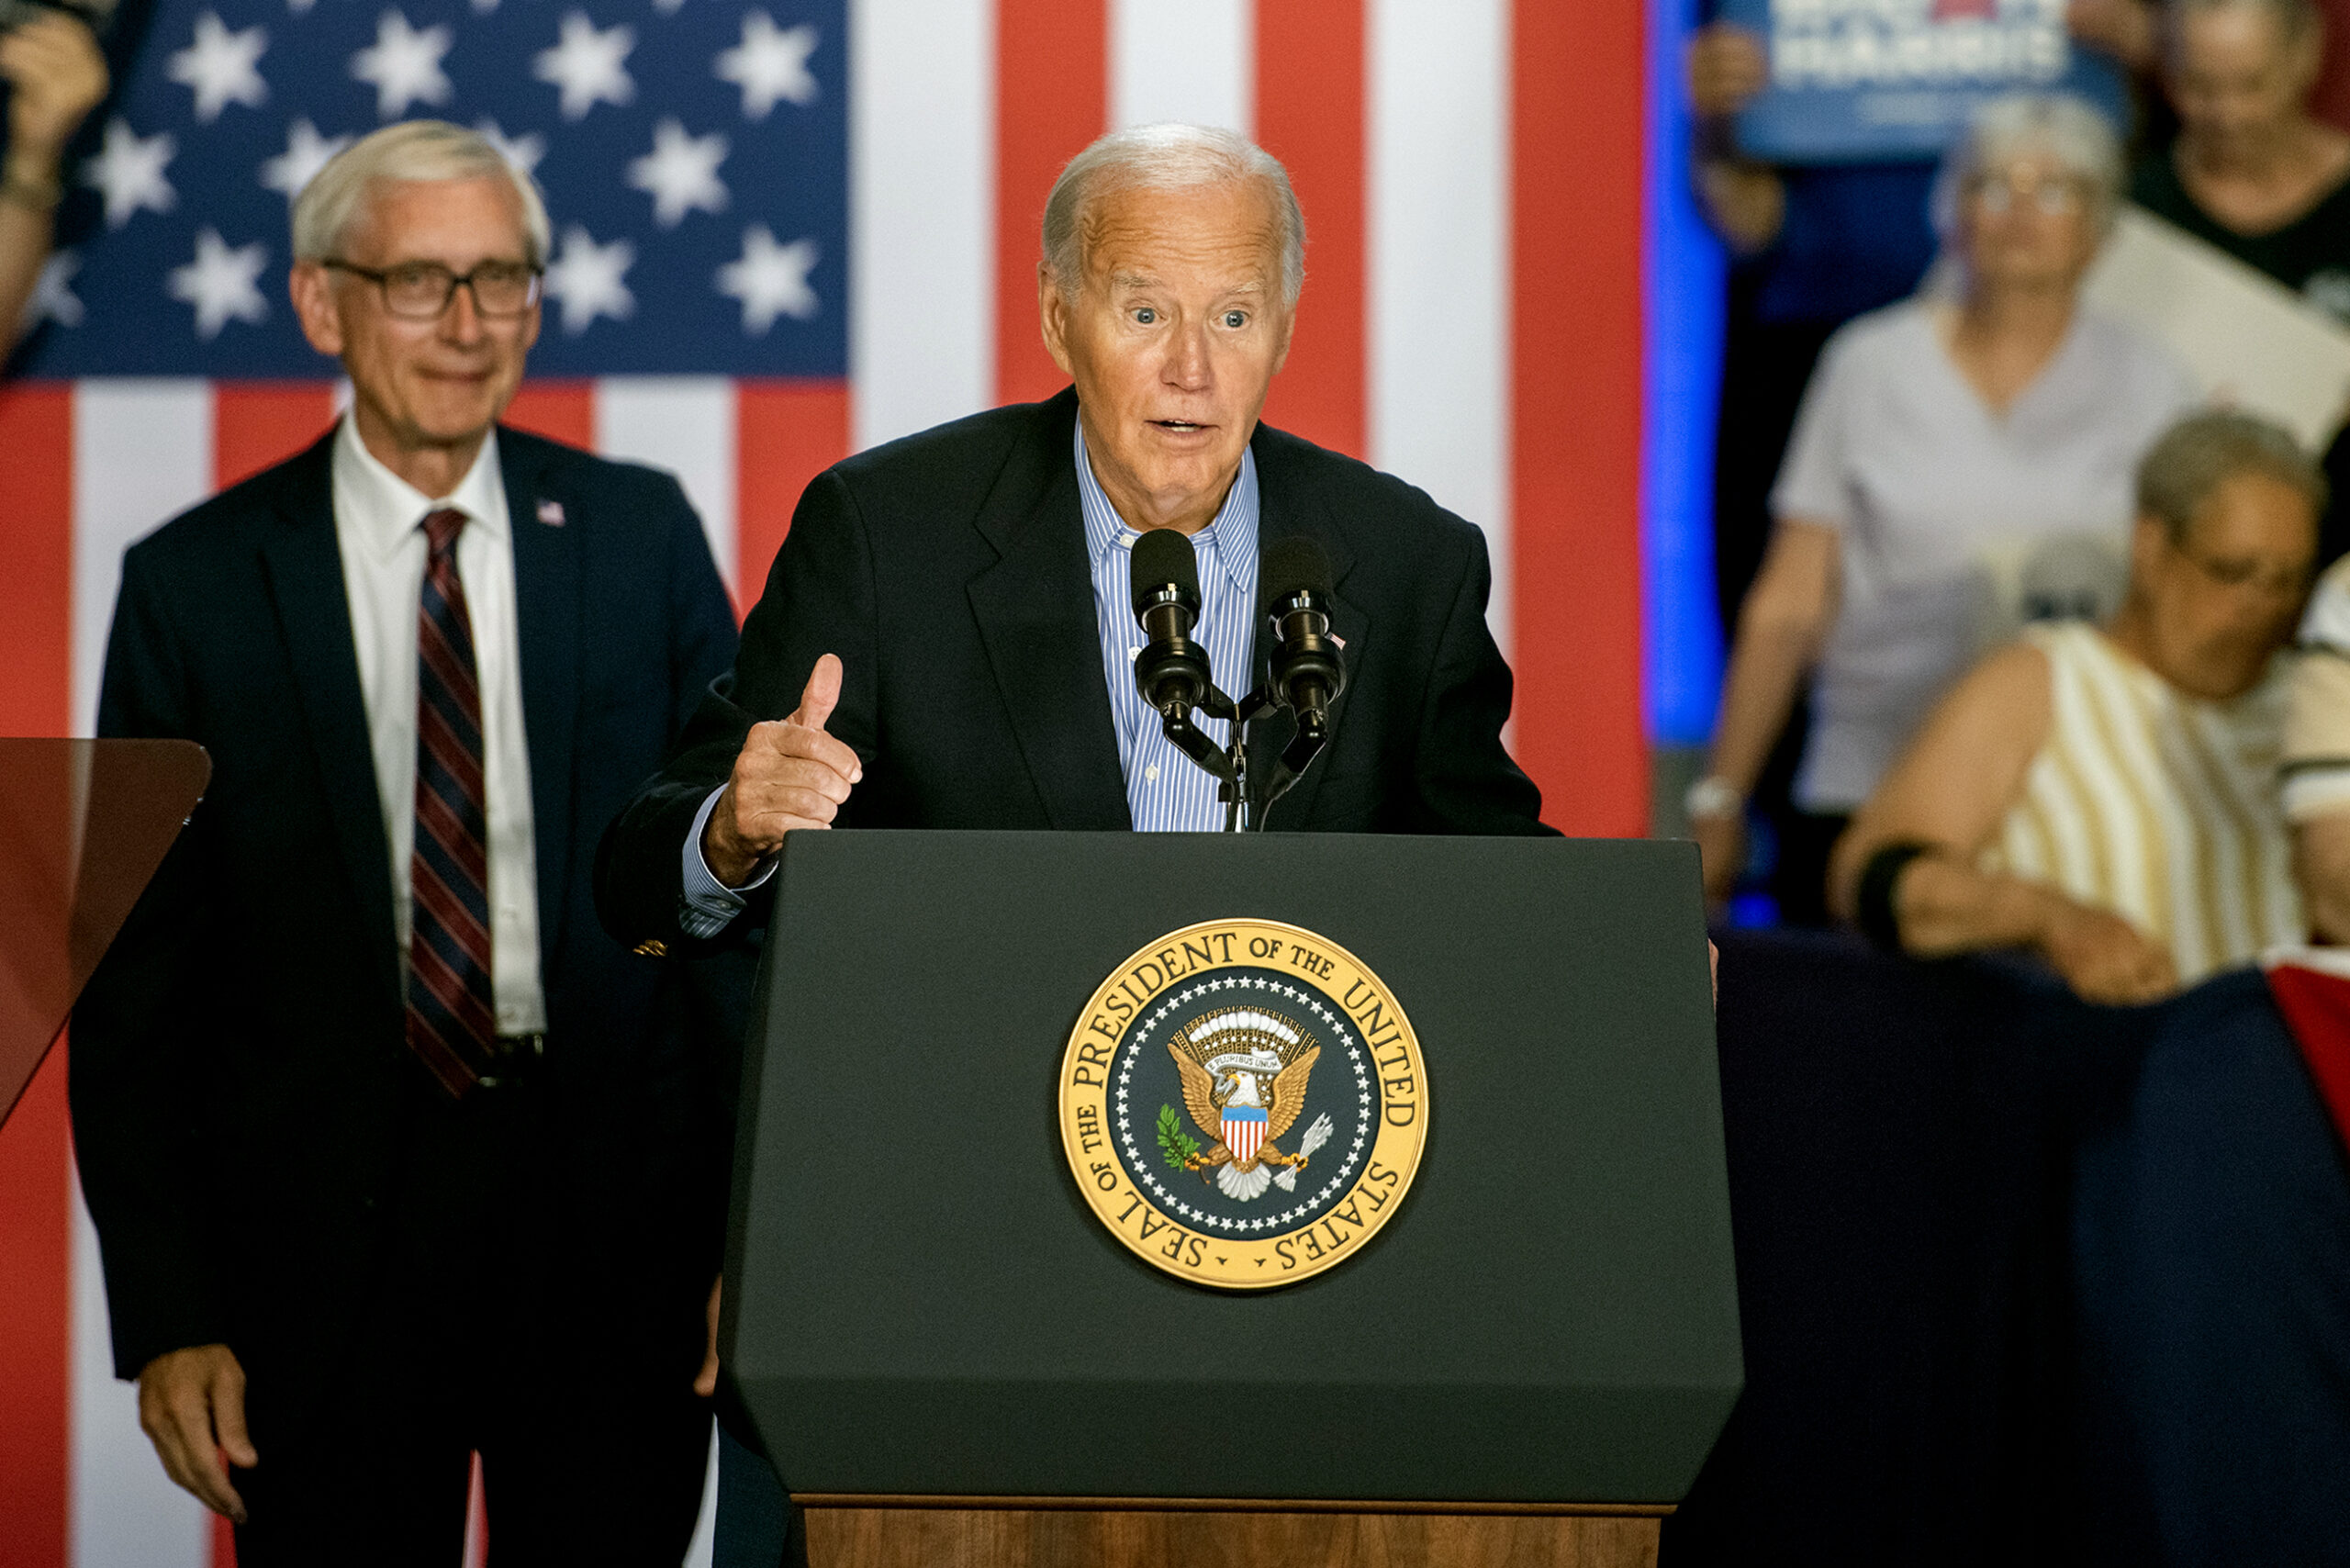 President Joe Biden drops out of the 2024 race, endorses VP Kamala Harris